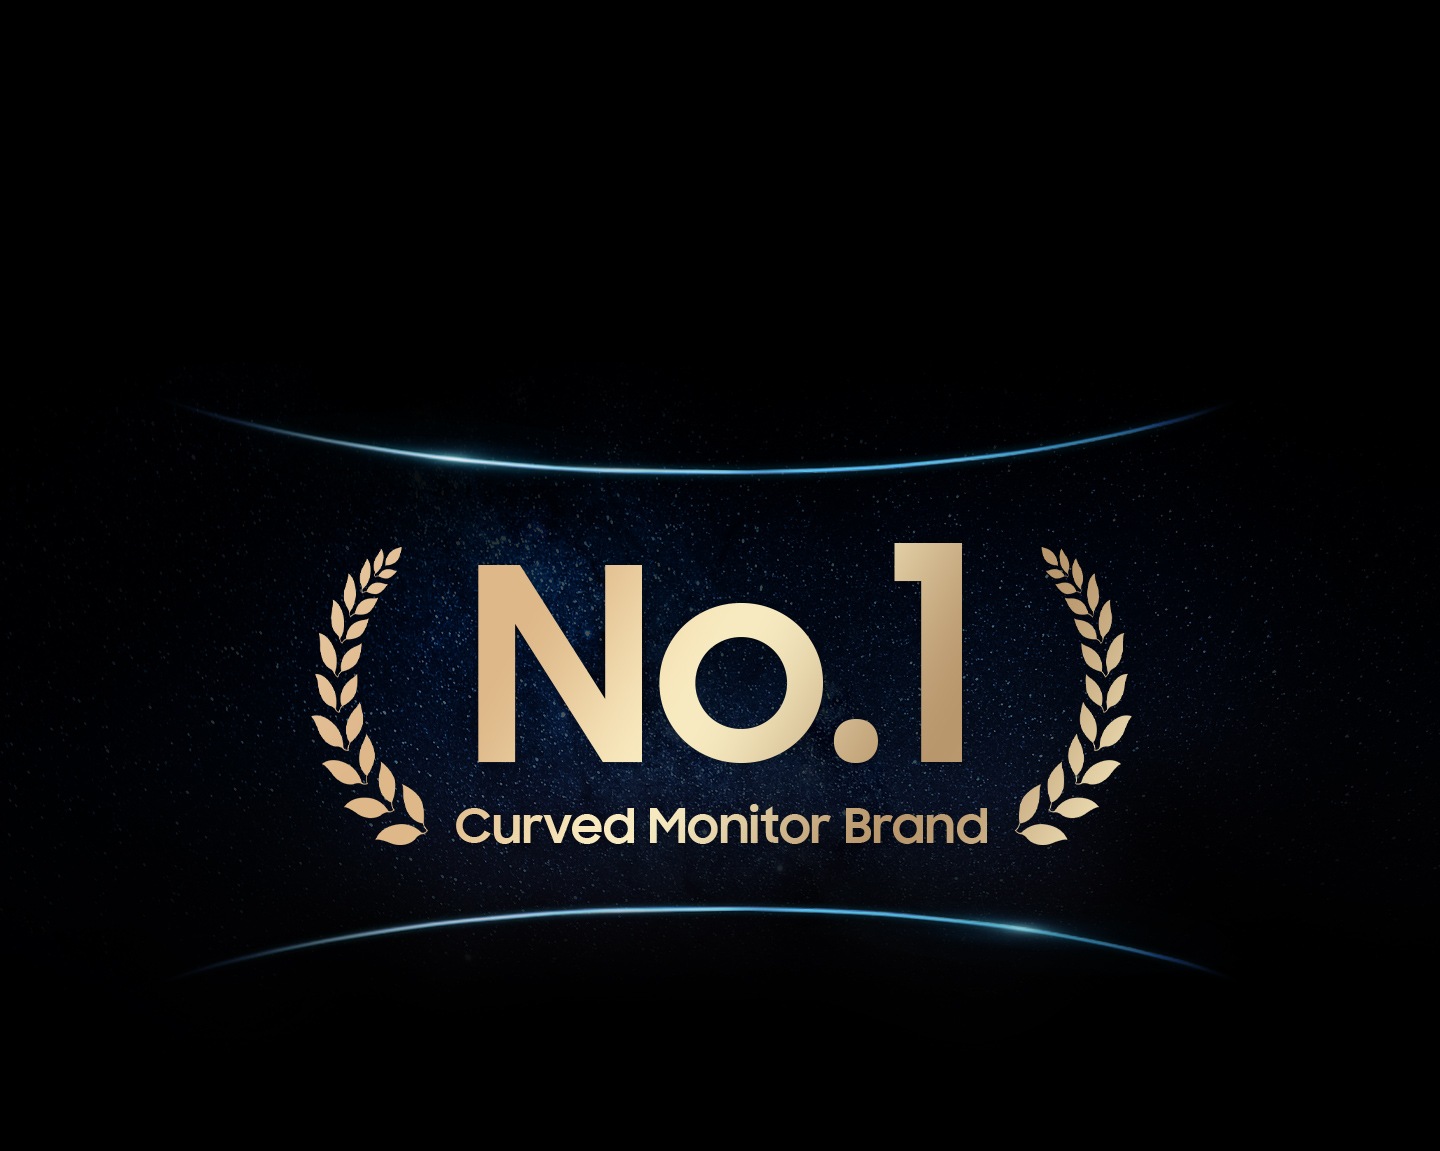 La imagen muestra un fondo estrellado con el texto "No. 1 Curved Monitor Brand", enmarcado con una línea curva superior y  una inferior, simulando un monitor curvo